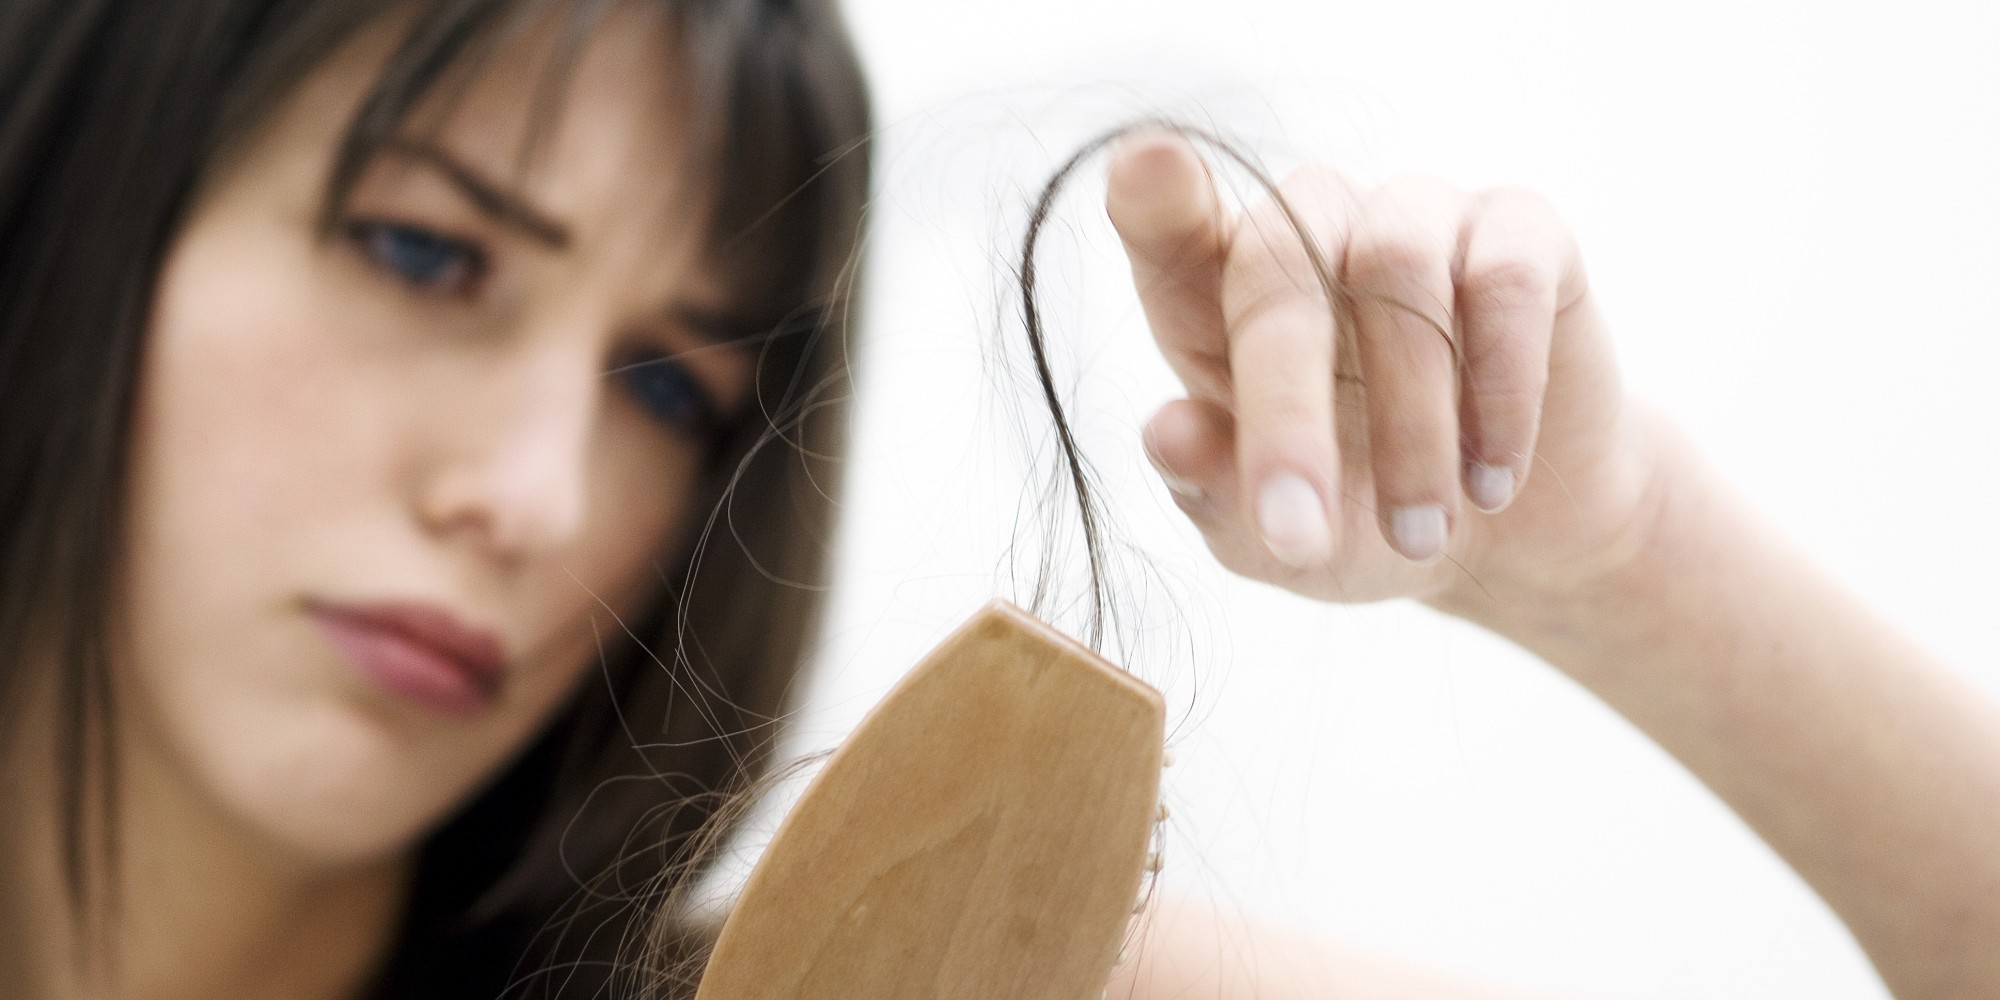 المعهد الذهبي|نصائح ووصفات مفيدة لتساقط الشعر وعلاج الصلعنصائح ووصفات مفيدة لتساقط الشعر وعلاج الصلع